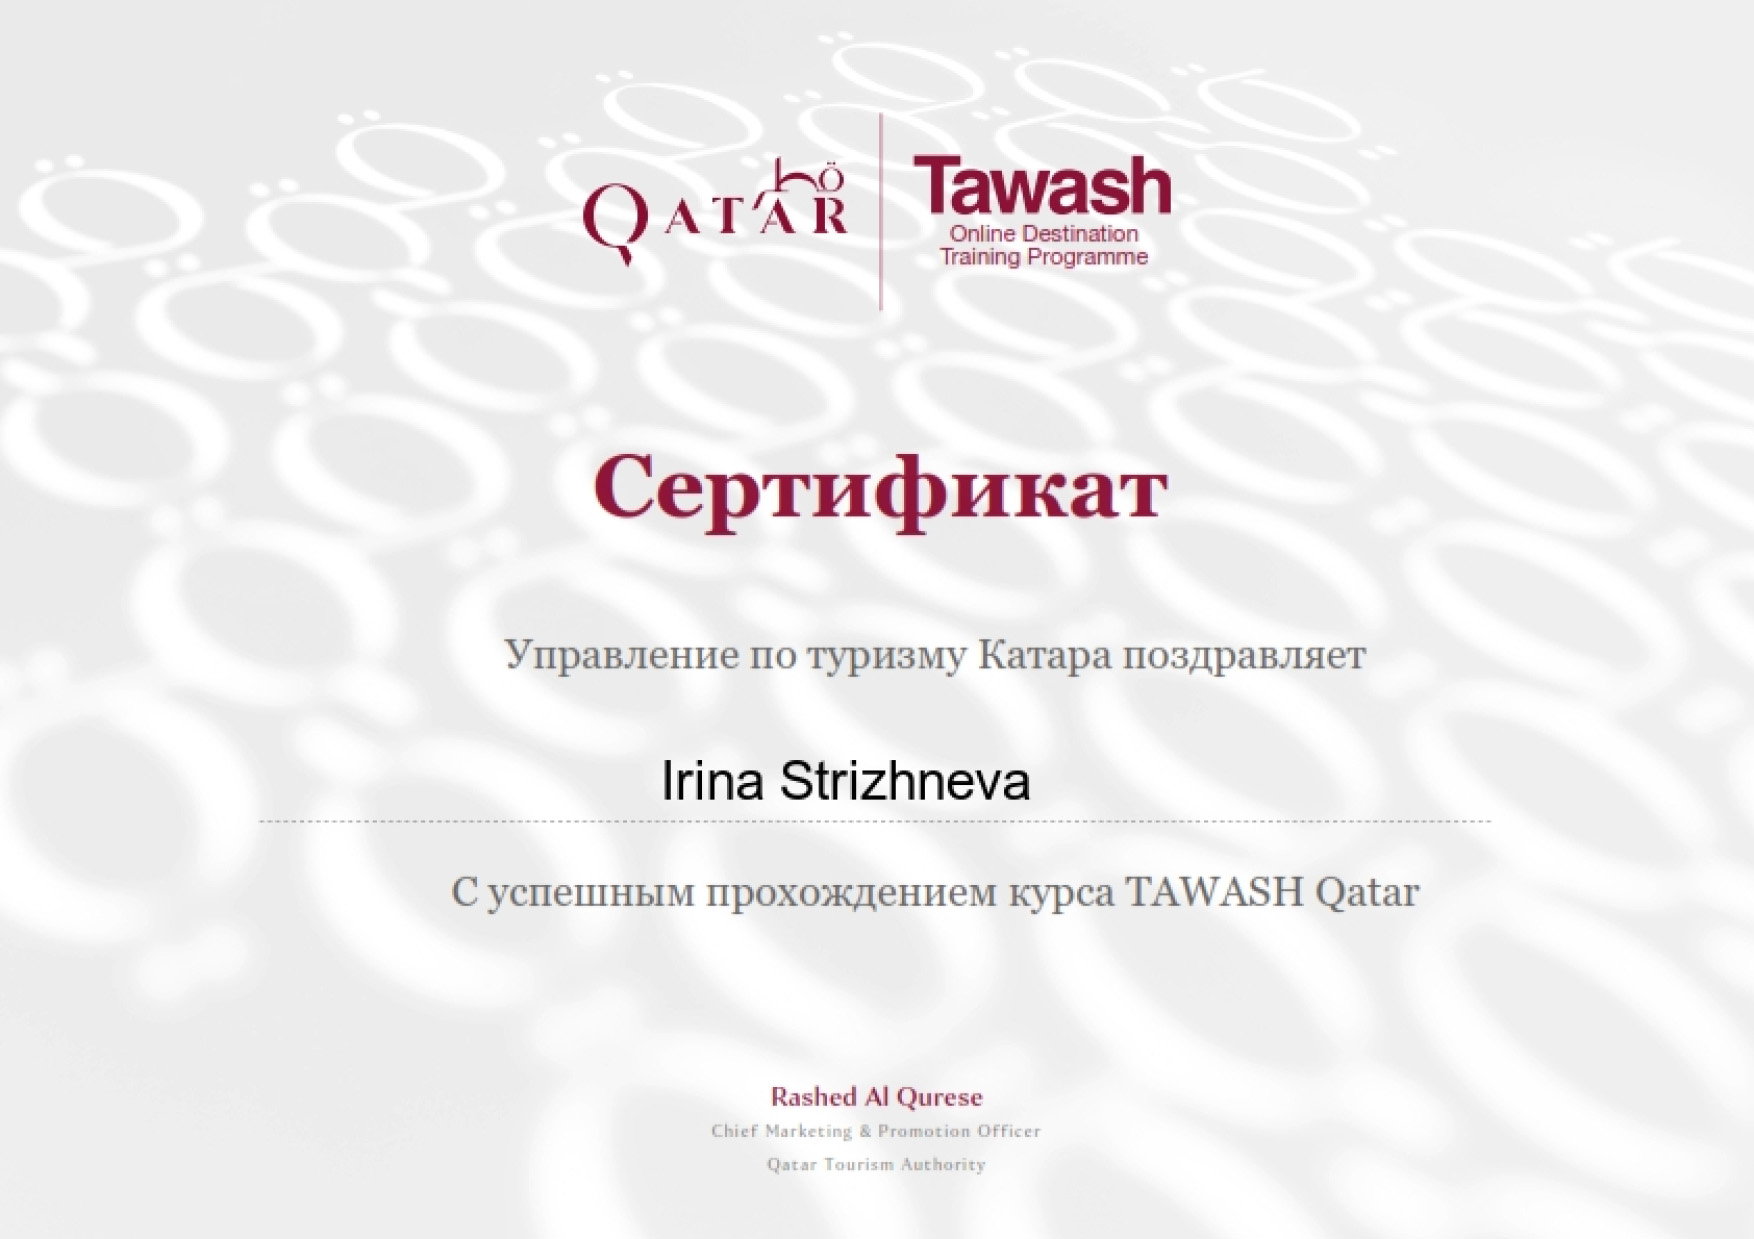 Сертификат о прохождении курса по Катару